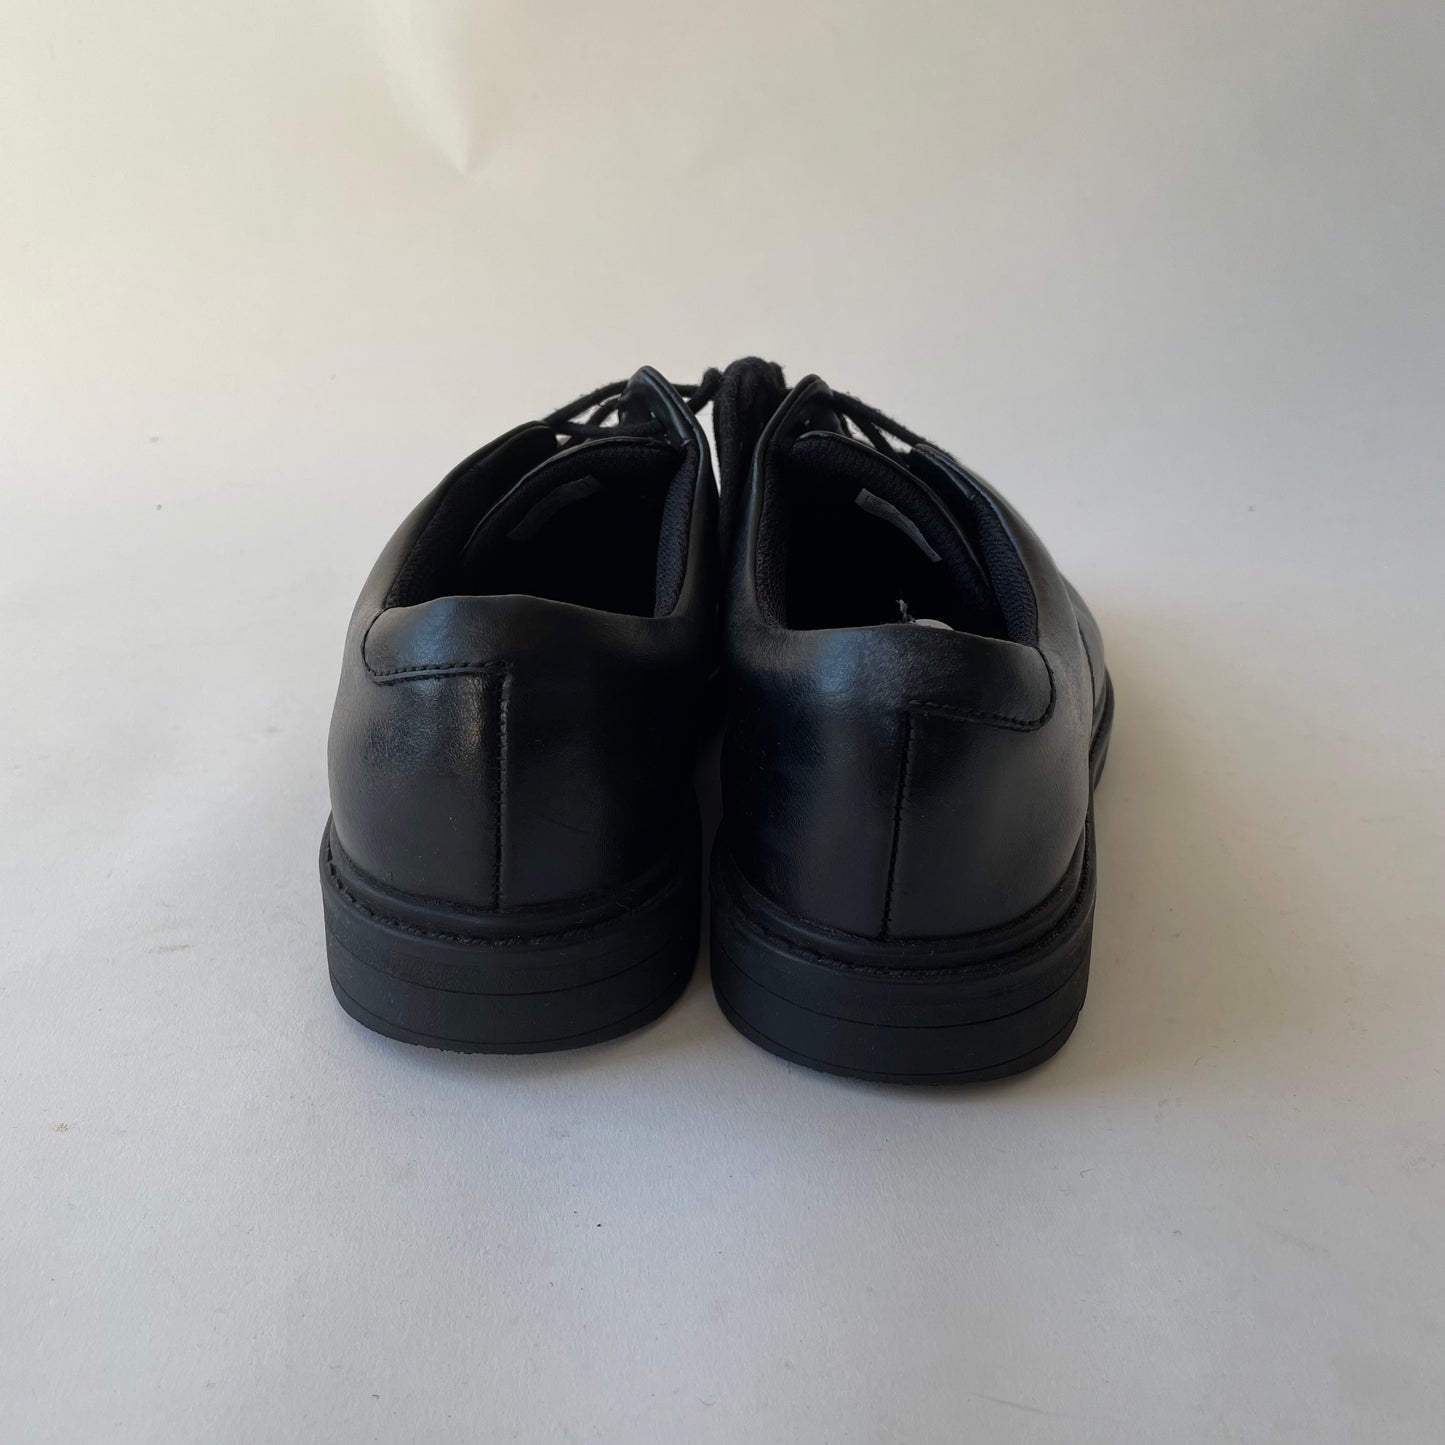 Clarks Black Shoes Shoe Size 5.5F